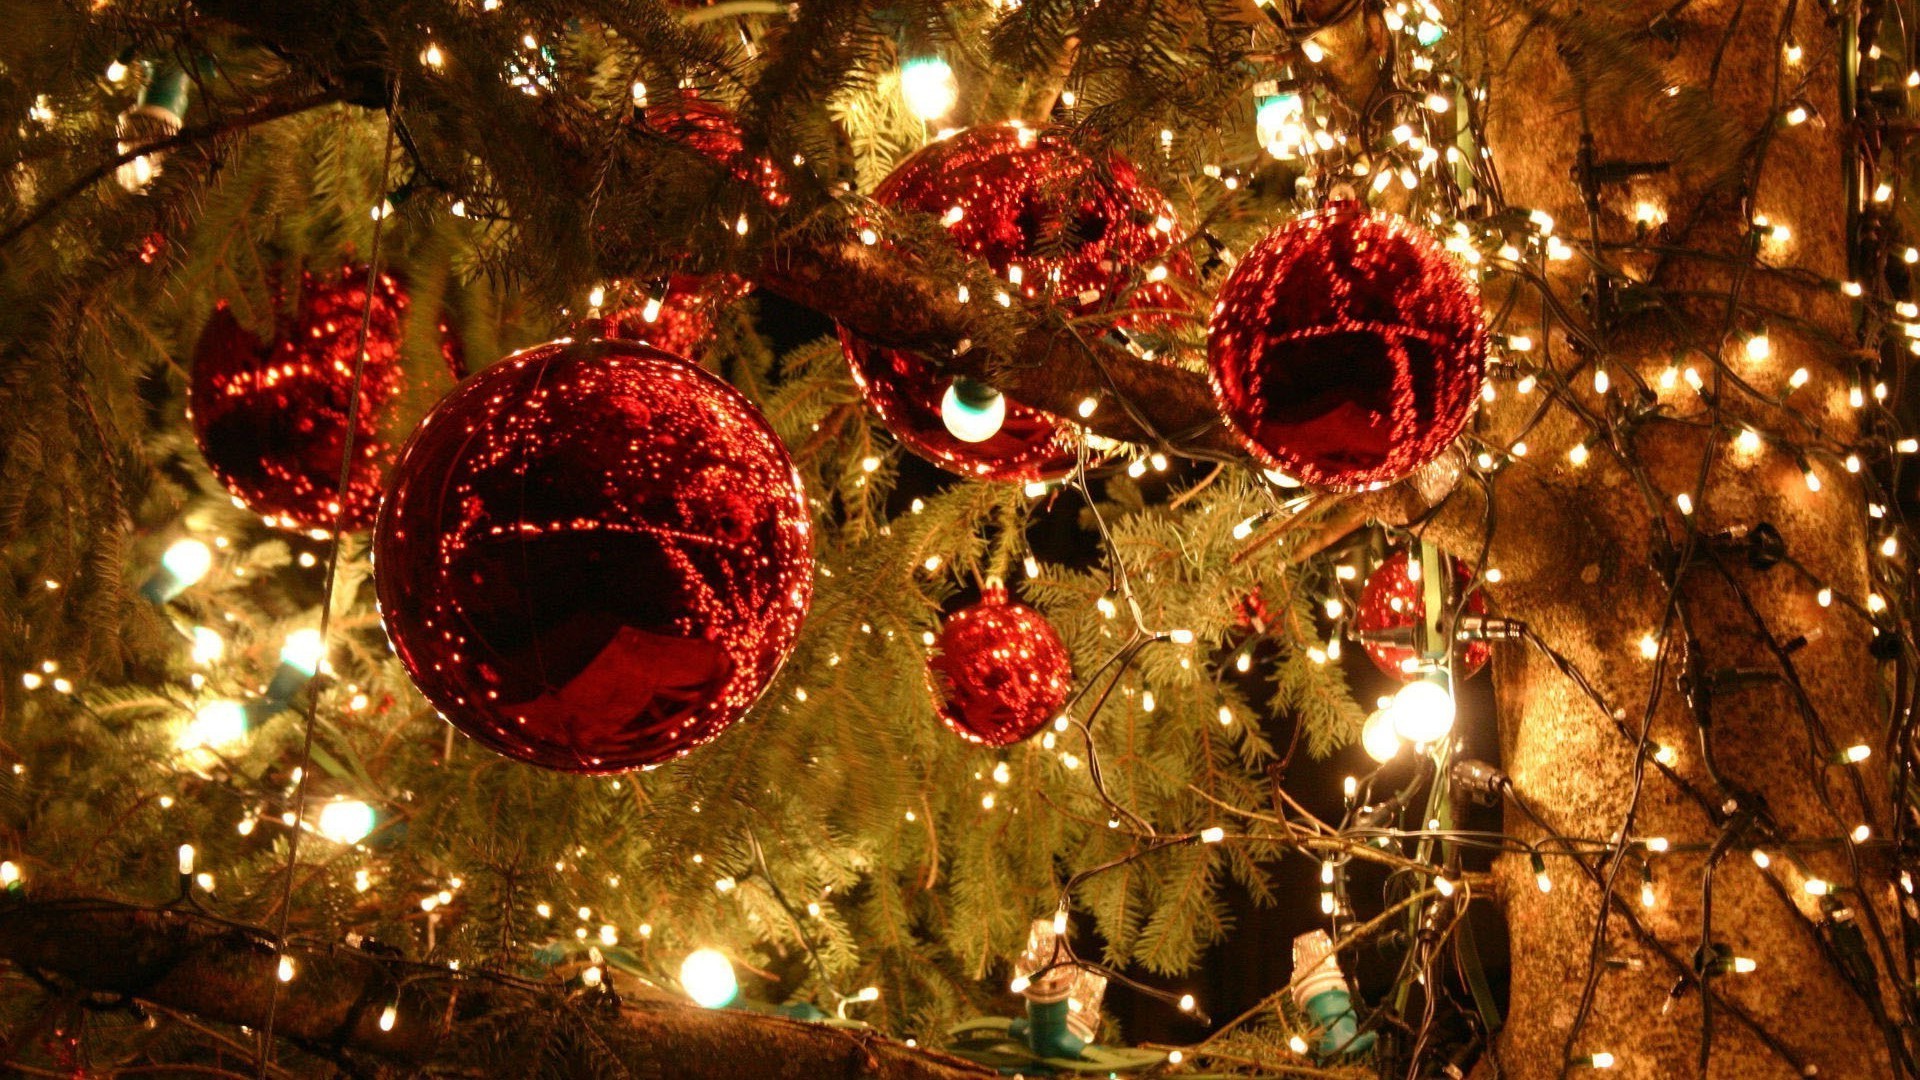 новый год рождество зима праздник светит мяч украшения золото мерри нить сфера блестят свет браслет лук дерево ева сосна витиеватый рождественская елка